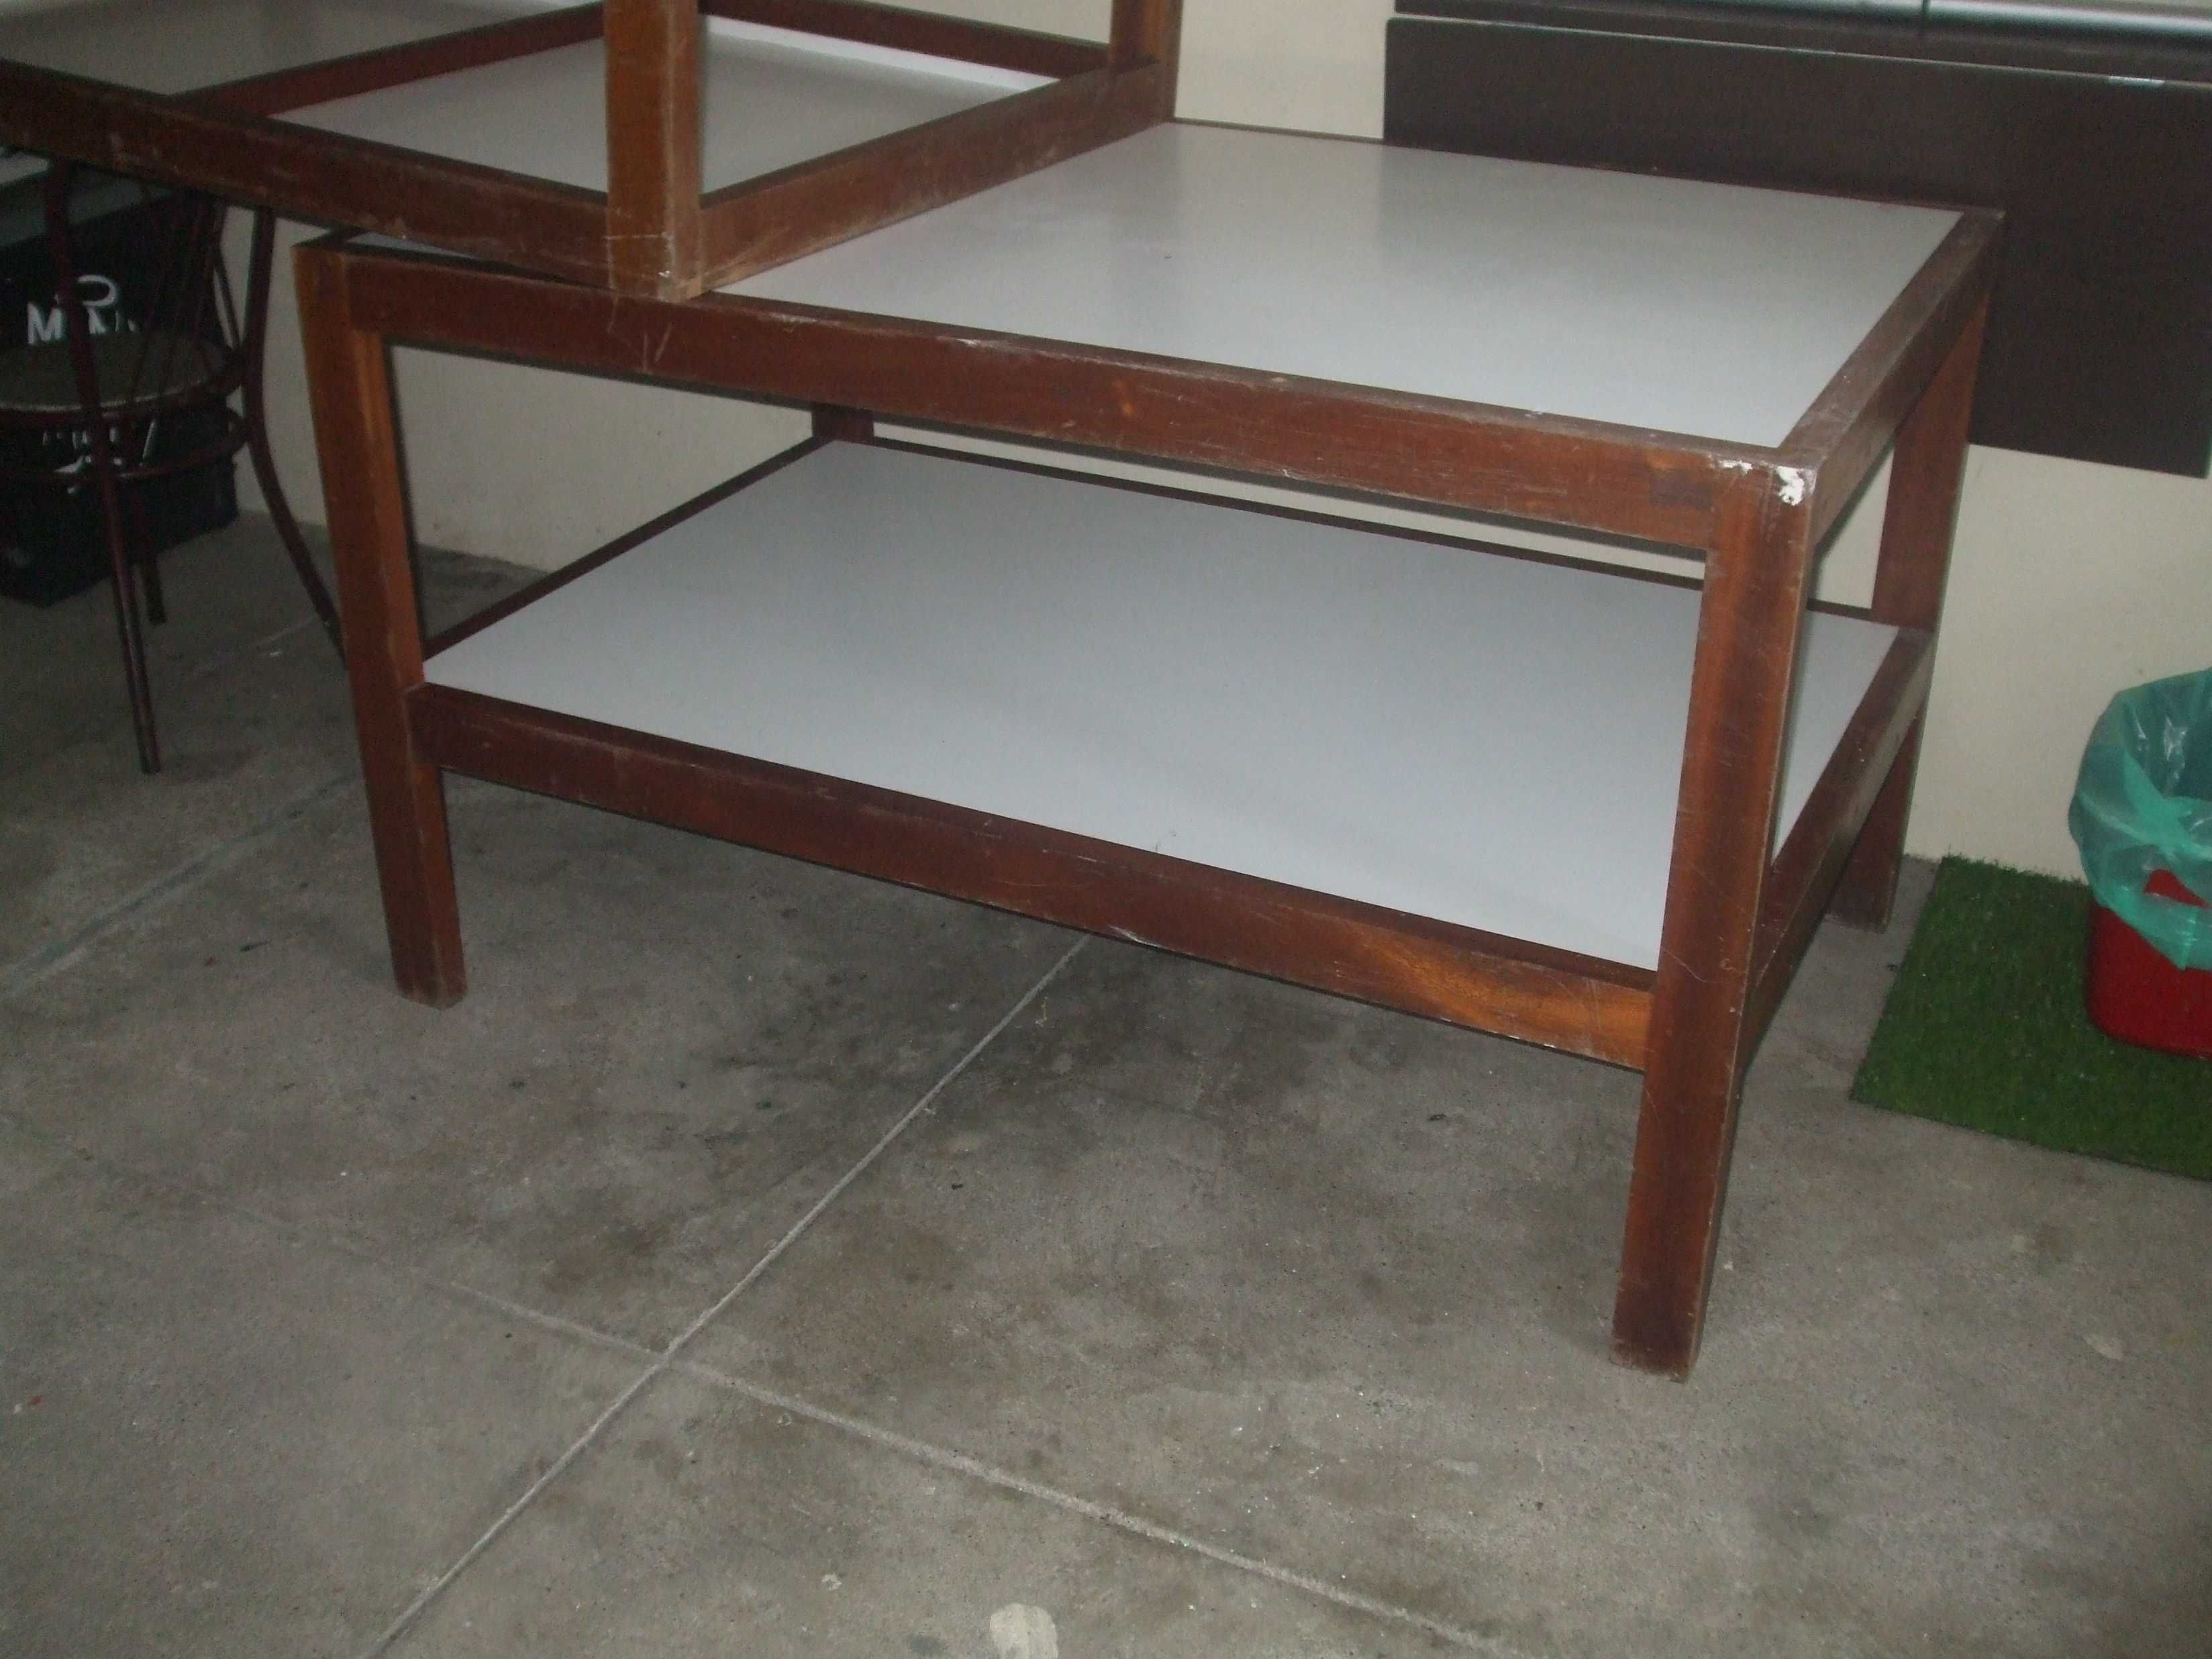 2 mesas corte p/ confeçao1,40x90x80 cm altura bom estado geral